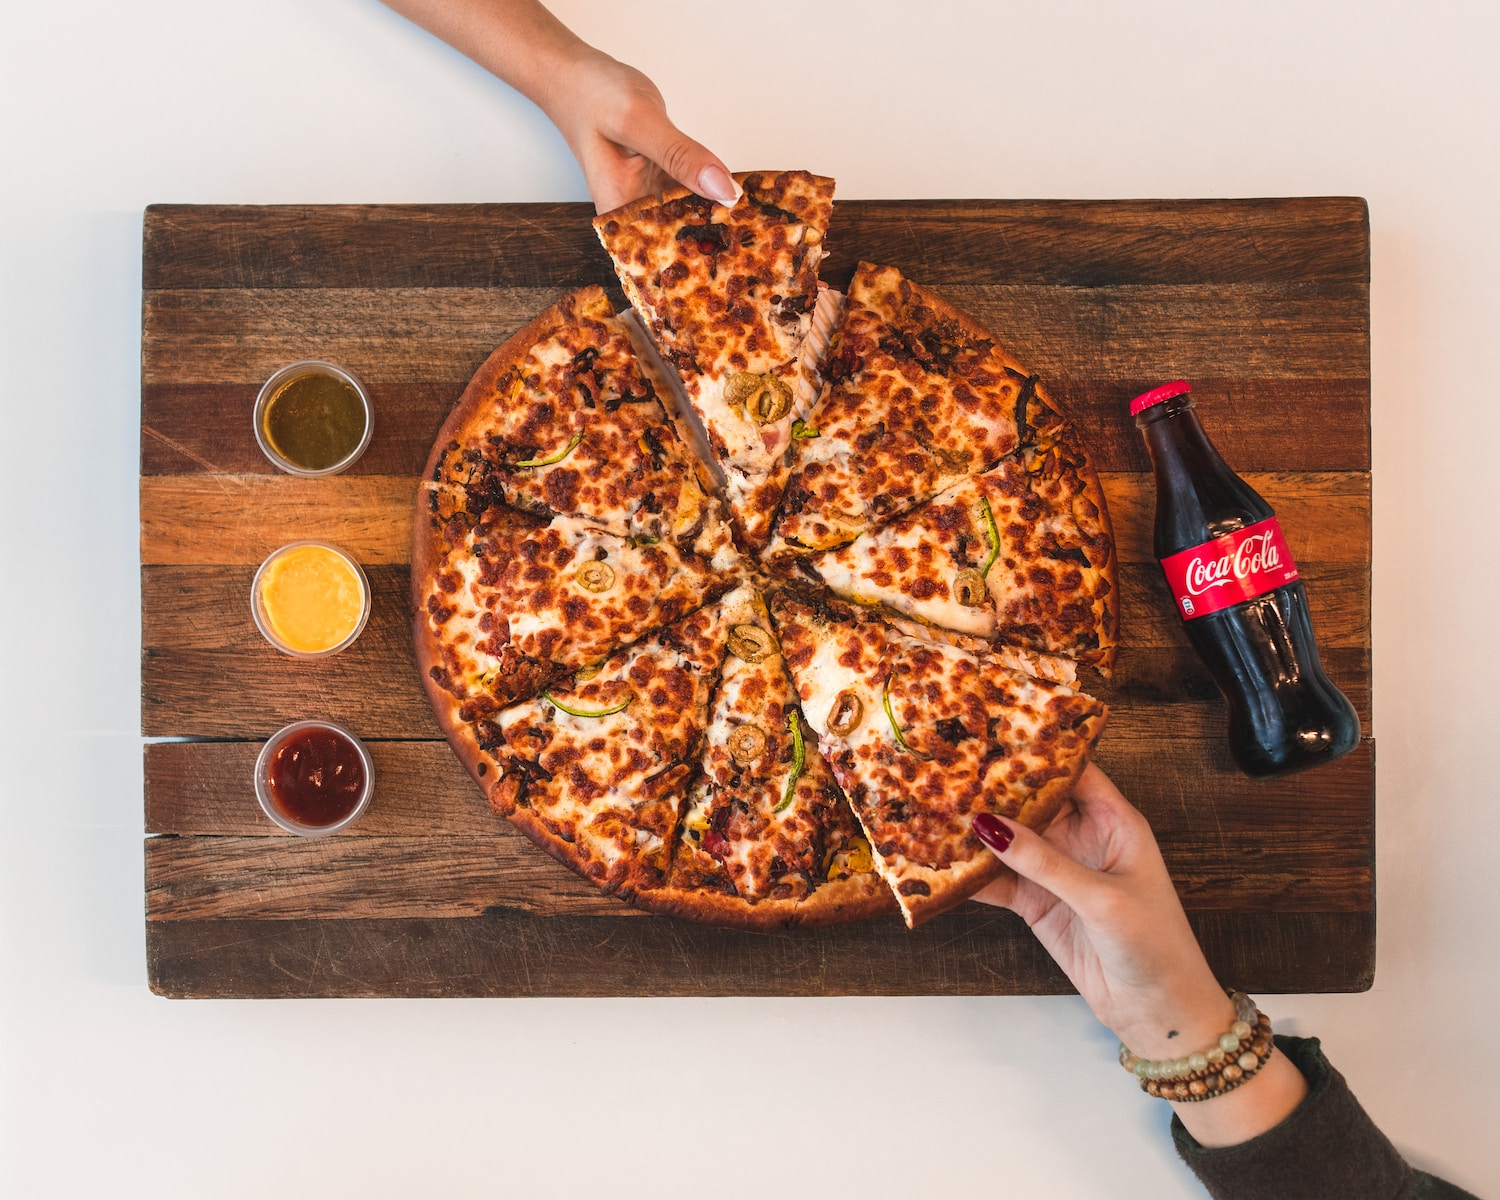 Pizza w stylu prosciutto e funghi – klasyczne połączenie składników